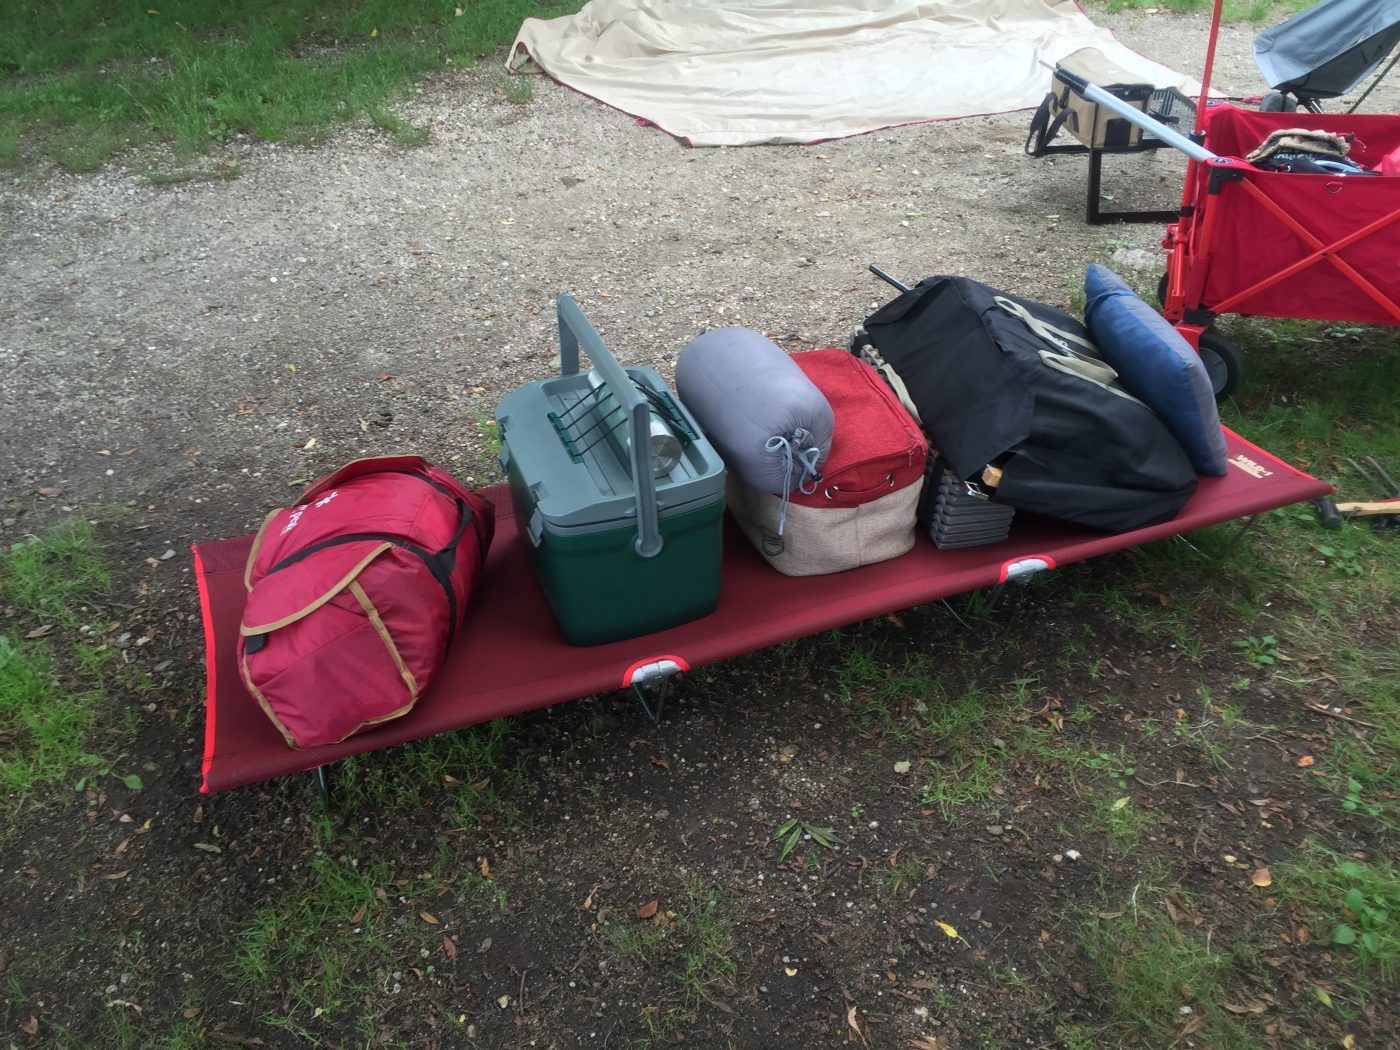 初心者向け】キャンプで荷物を直置きしないための意外なアイテムを紹介します。 | キャンプ初心者向け総合情報ブログ Hyper Camp Creators